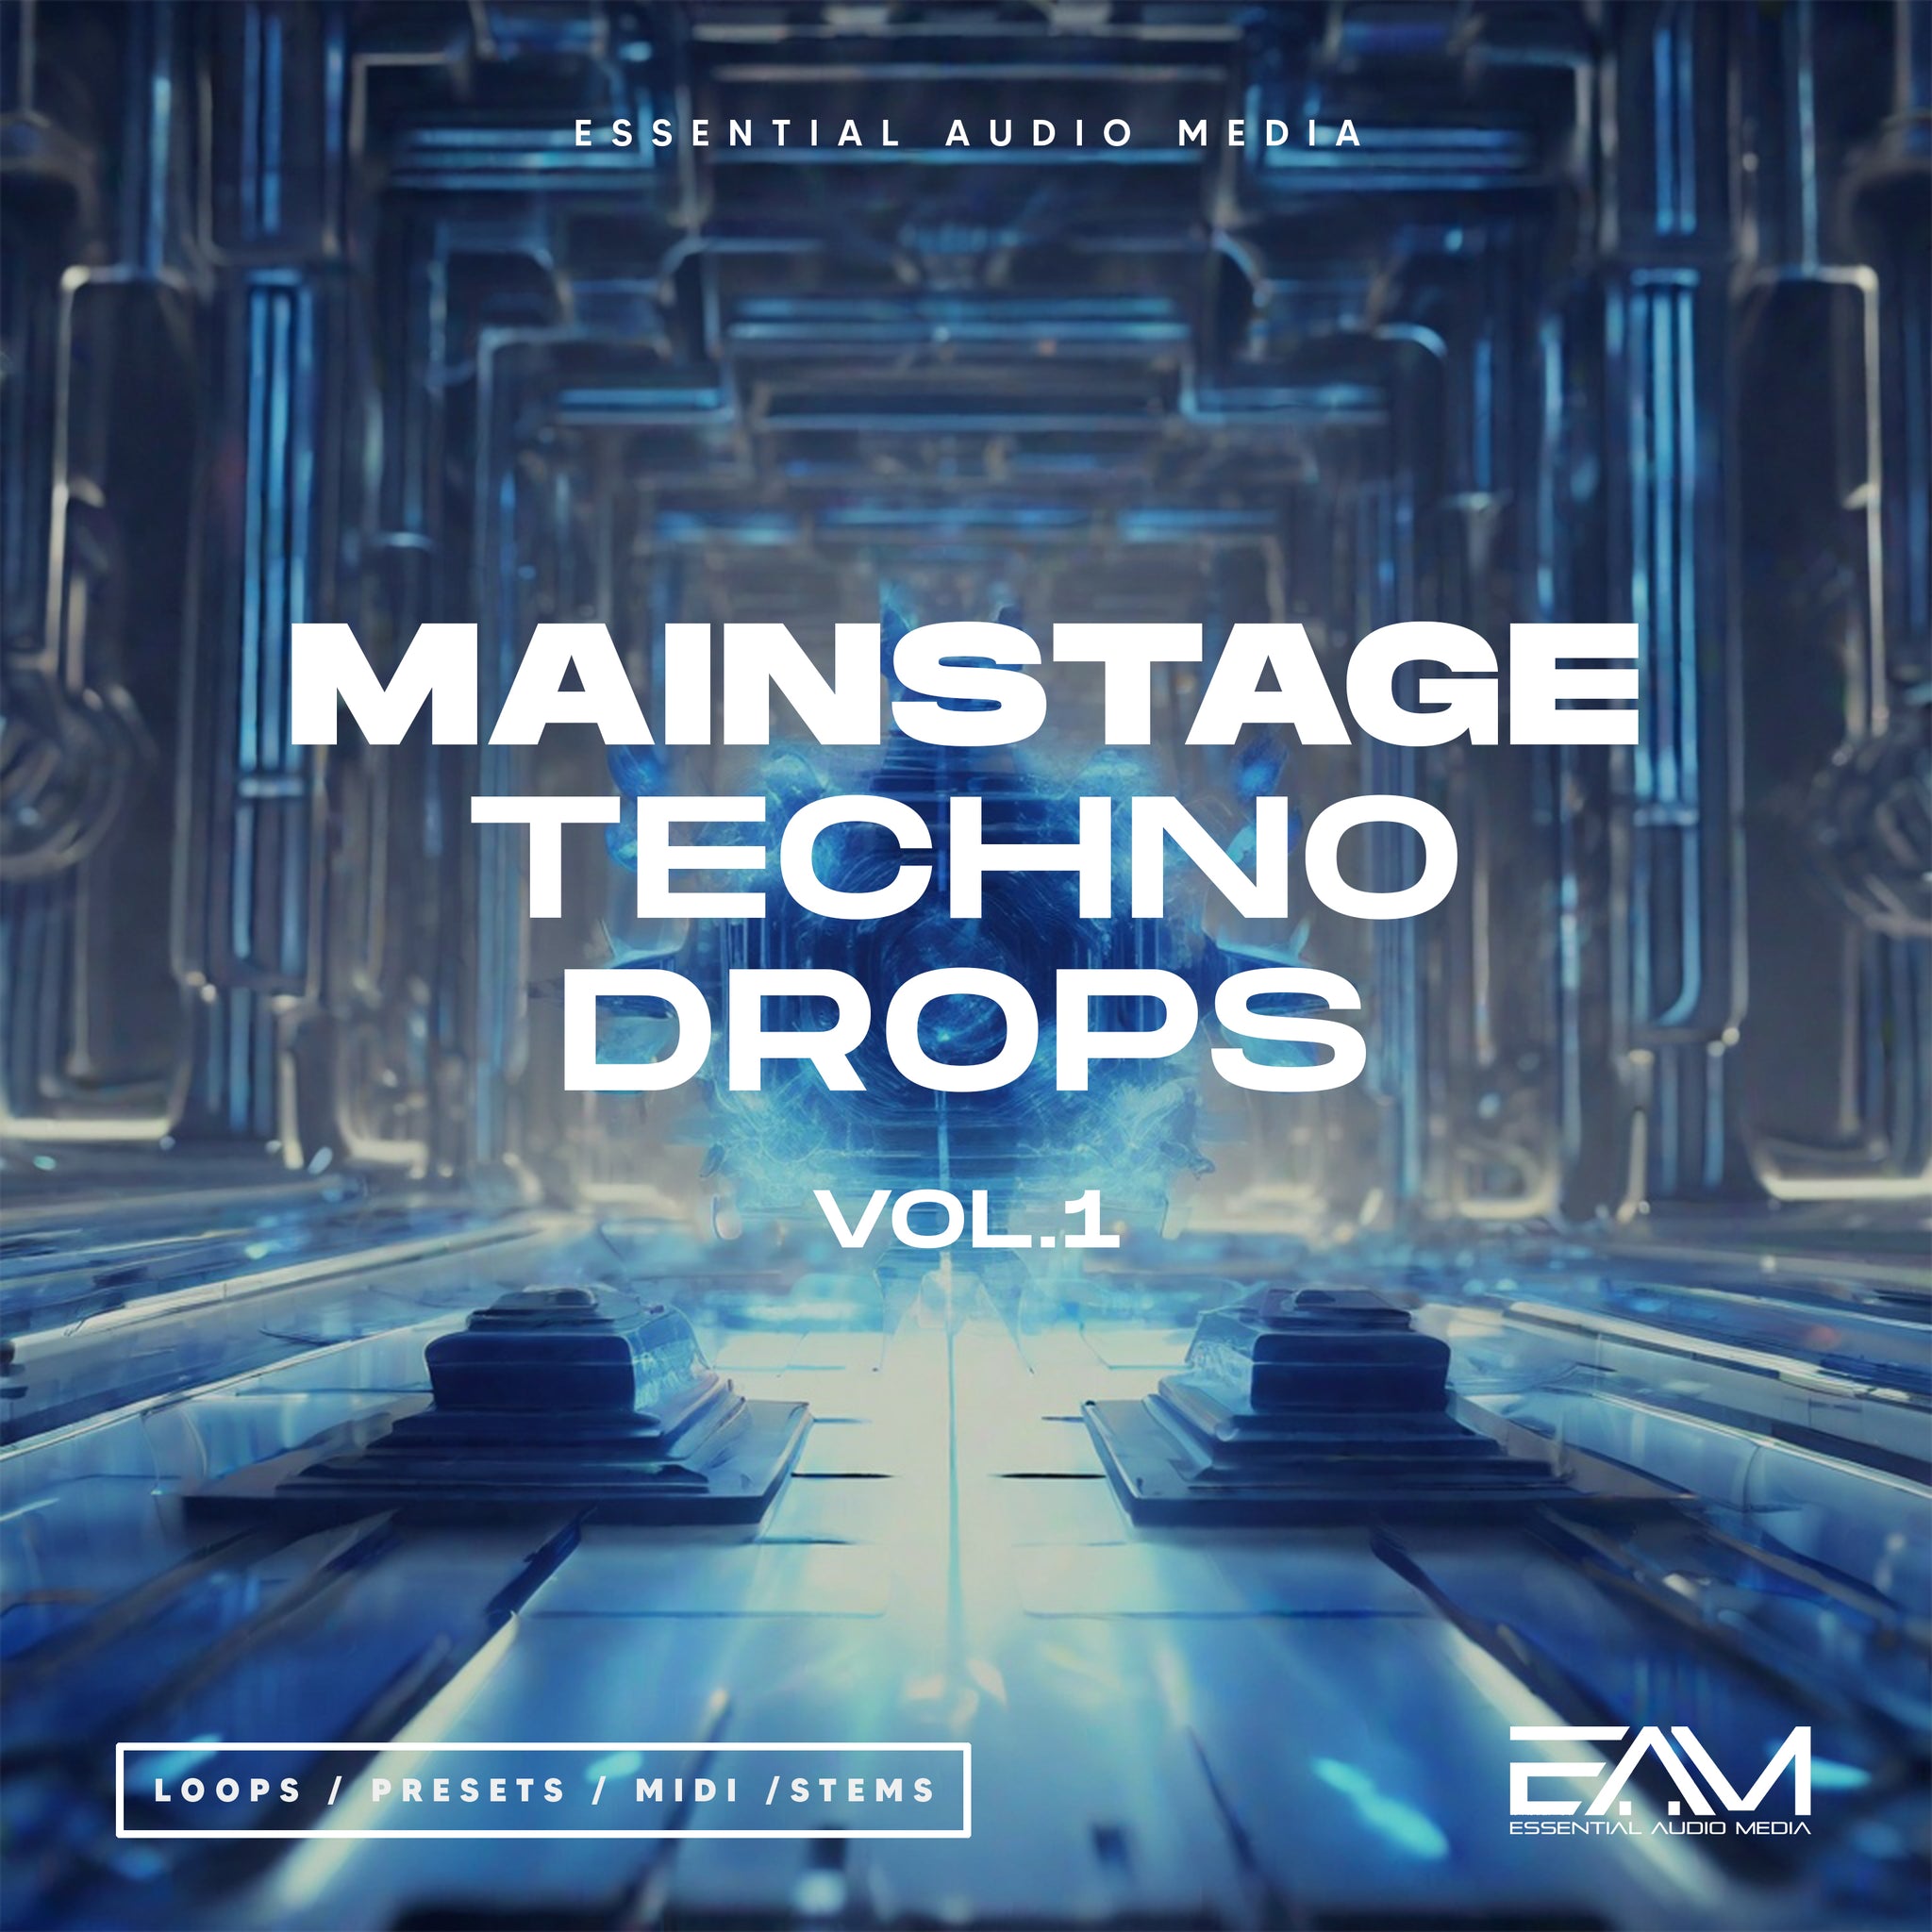 Mainstage Techno Drops Vol.1